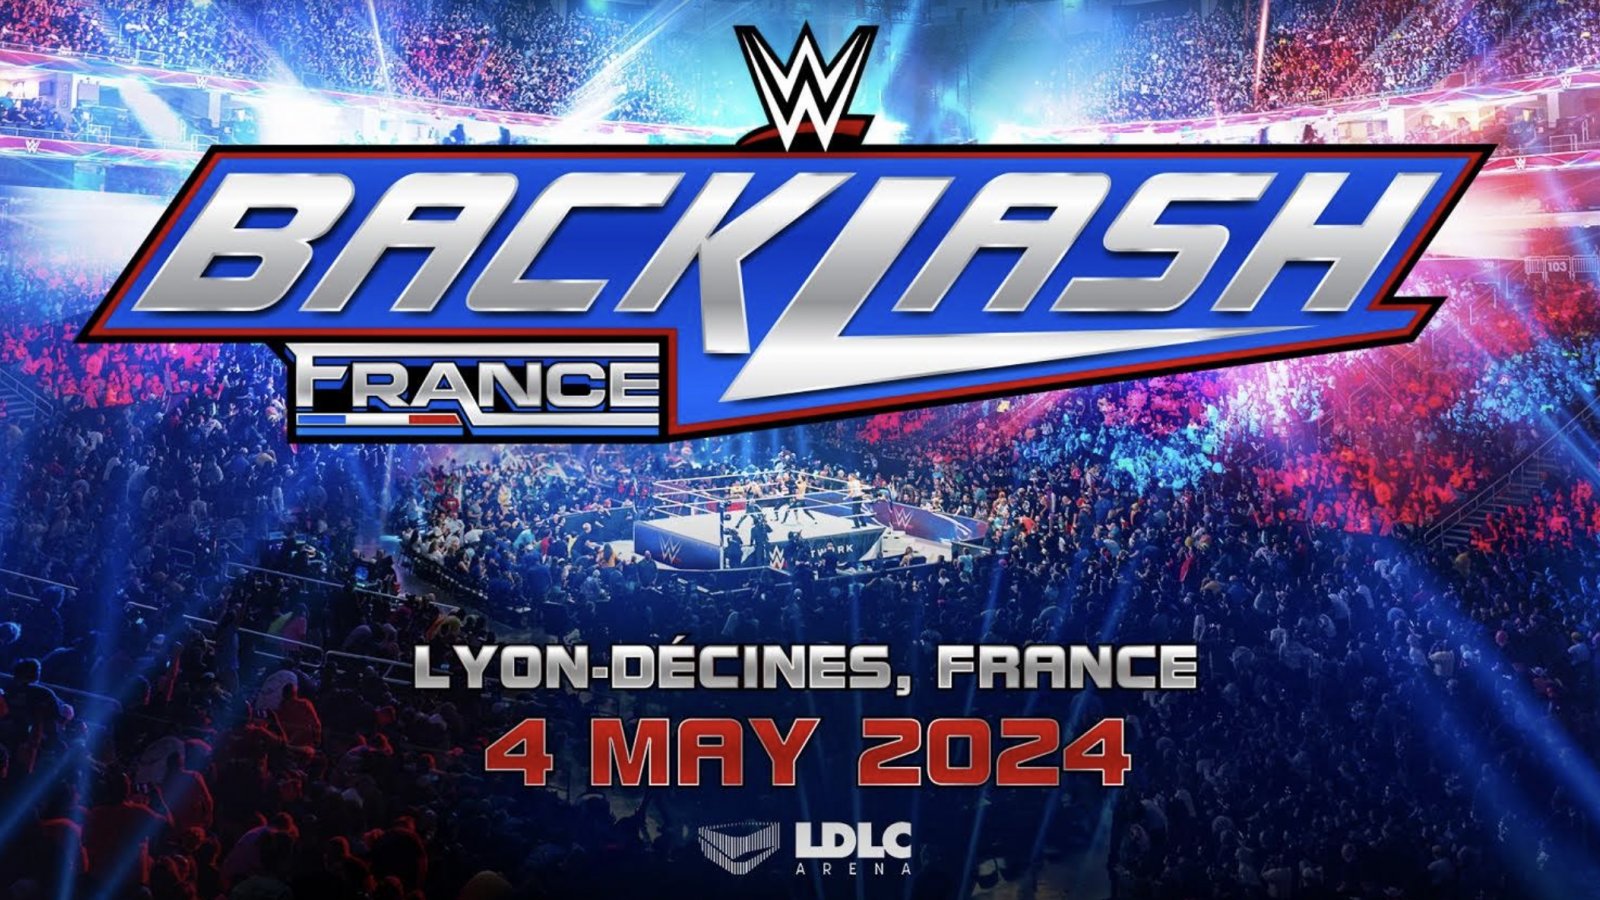 La Francia ospiterà nel maggio 2024 il primo WWE PLE in assoluto: WWE Backlash France